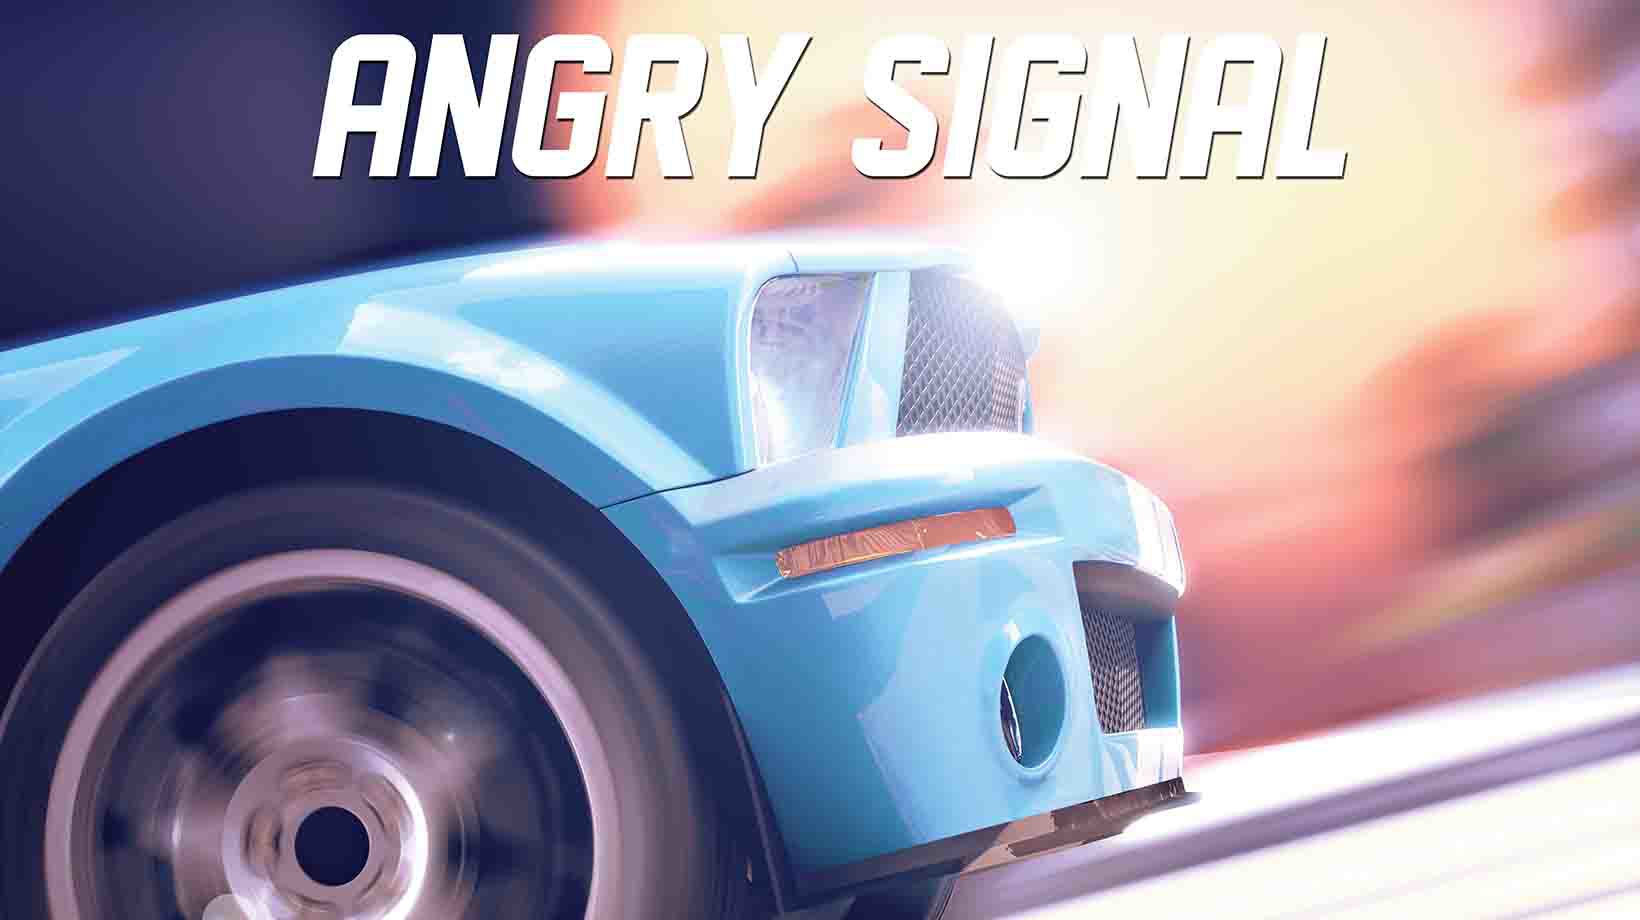 Angry signal